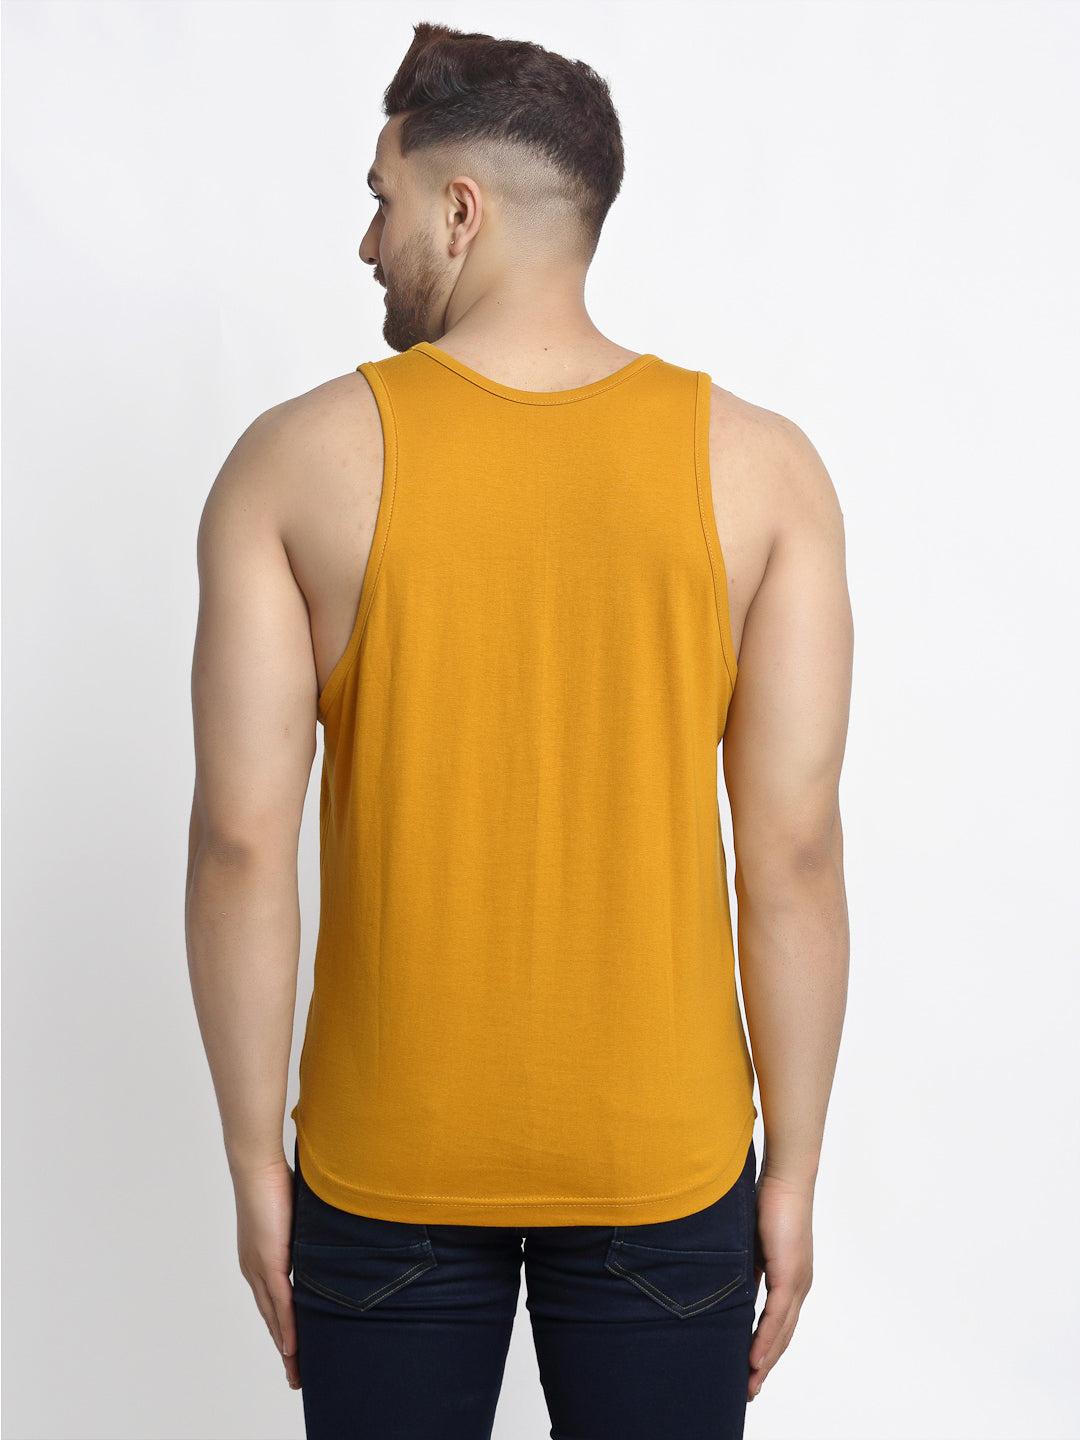 Men's Pack of 2 Blak & Mustard Printed Gym vest - Friskers